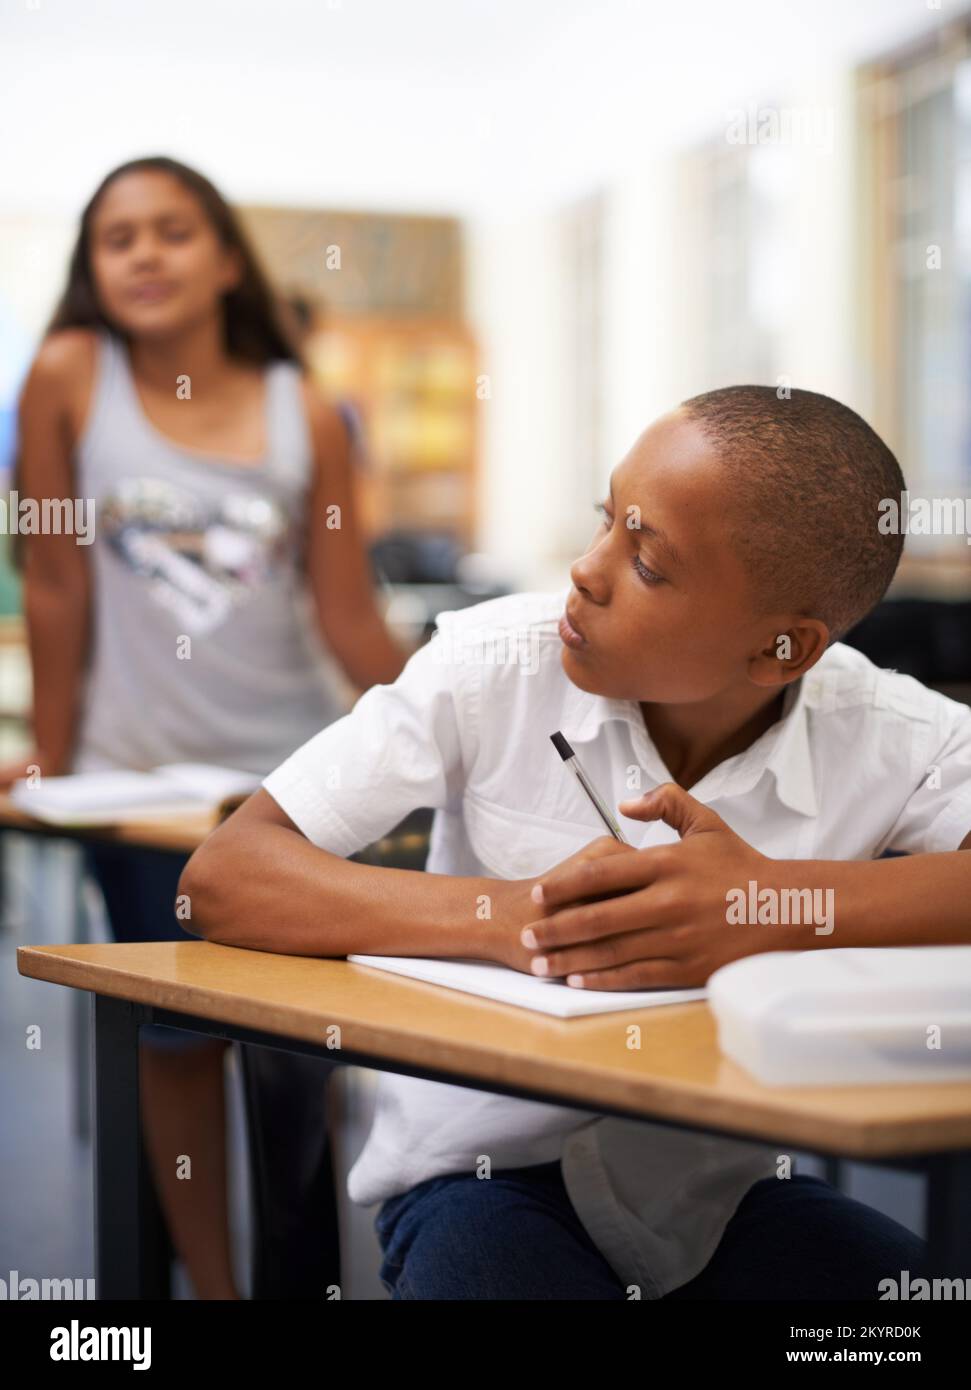 Interrompi copia. Un ragazzo che scrive un test mentre un compagno di  classe prova a copiare Foto stock - Alamy